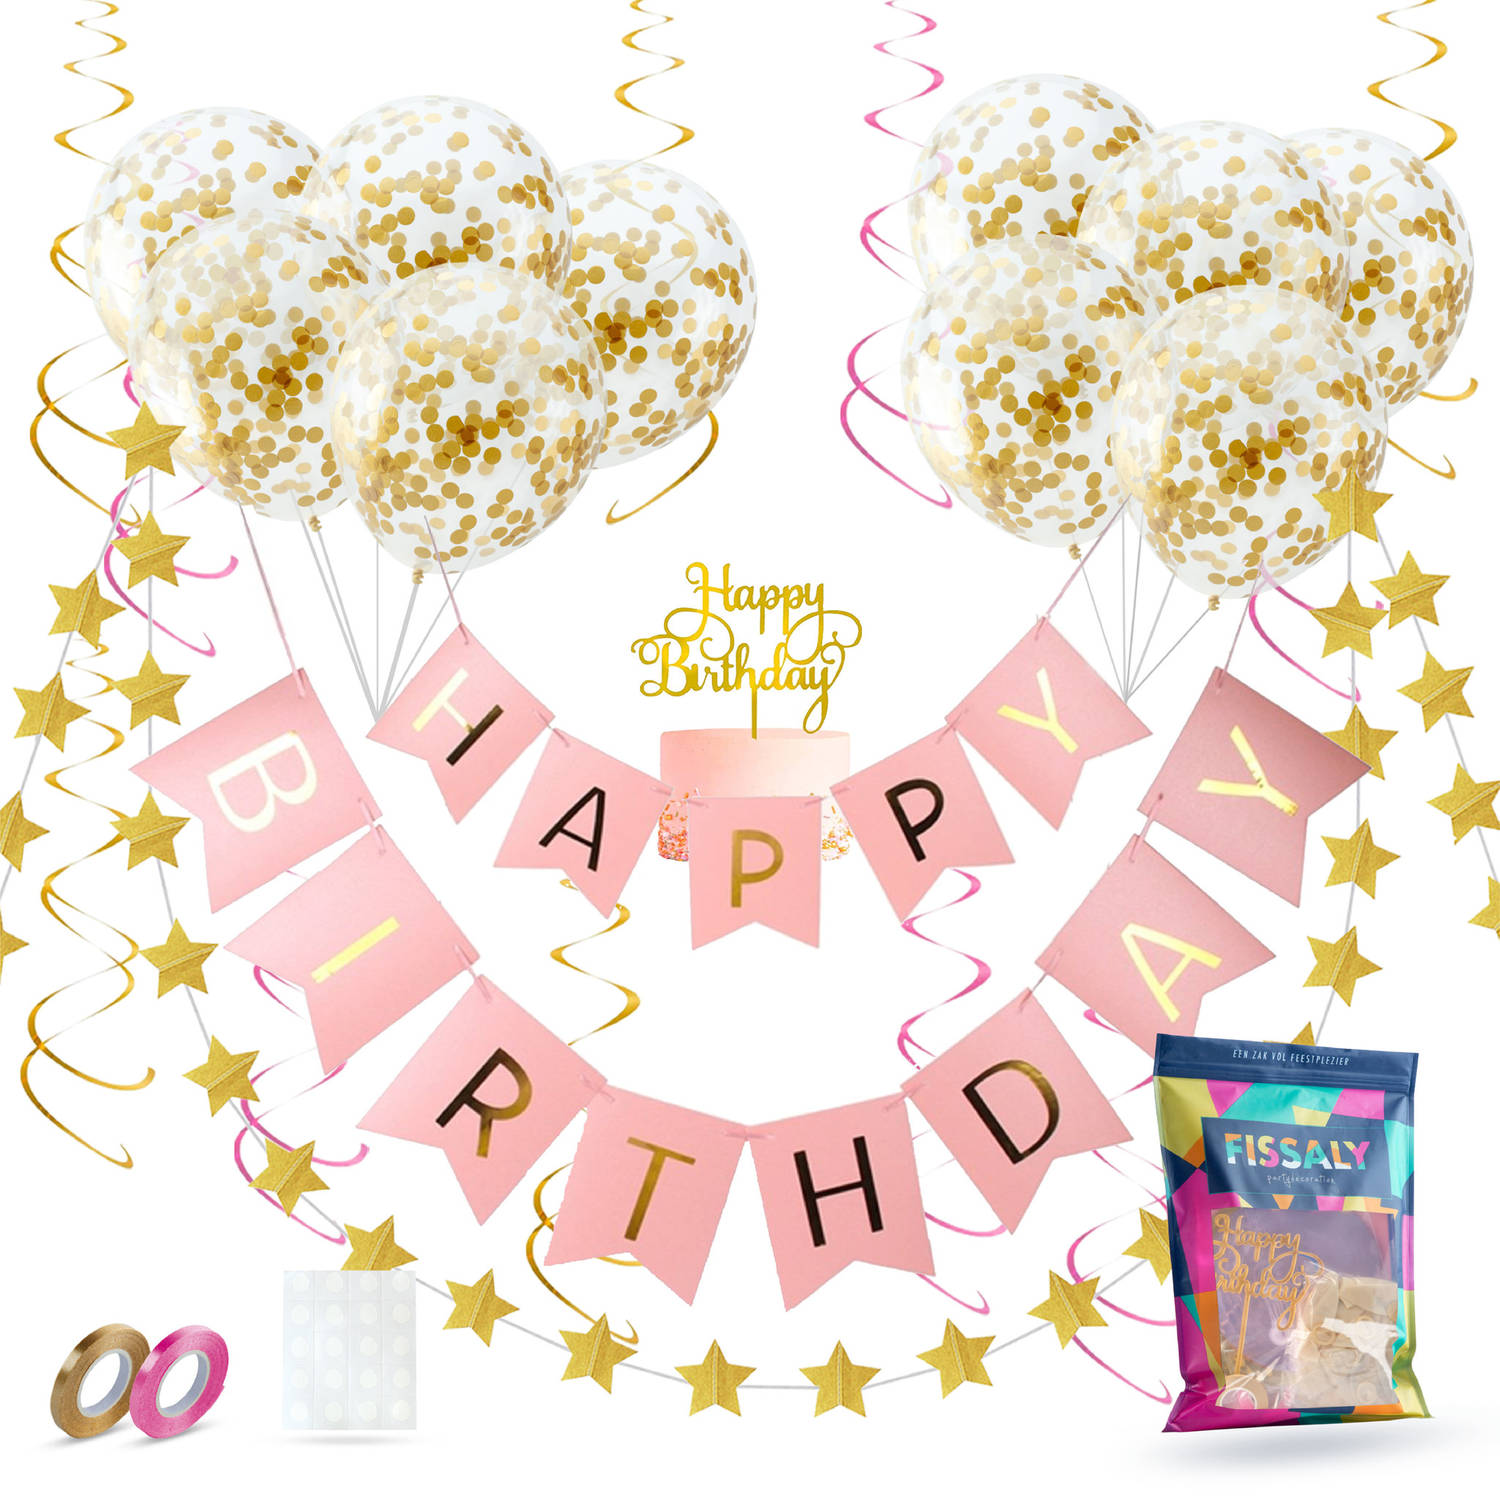 Fissaly® Verjaardag Slinger Roze & Goud met Papieren Confetti Ballonnen – Decoratie – Happy Birthday - Letterslinger